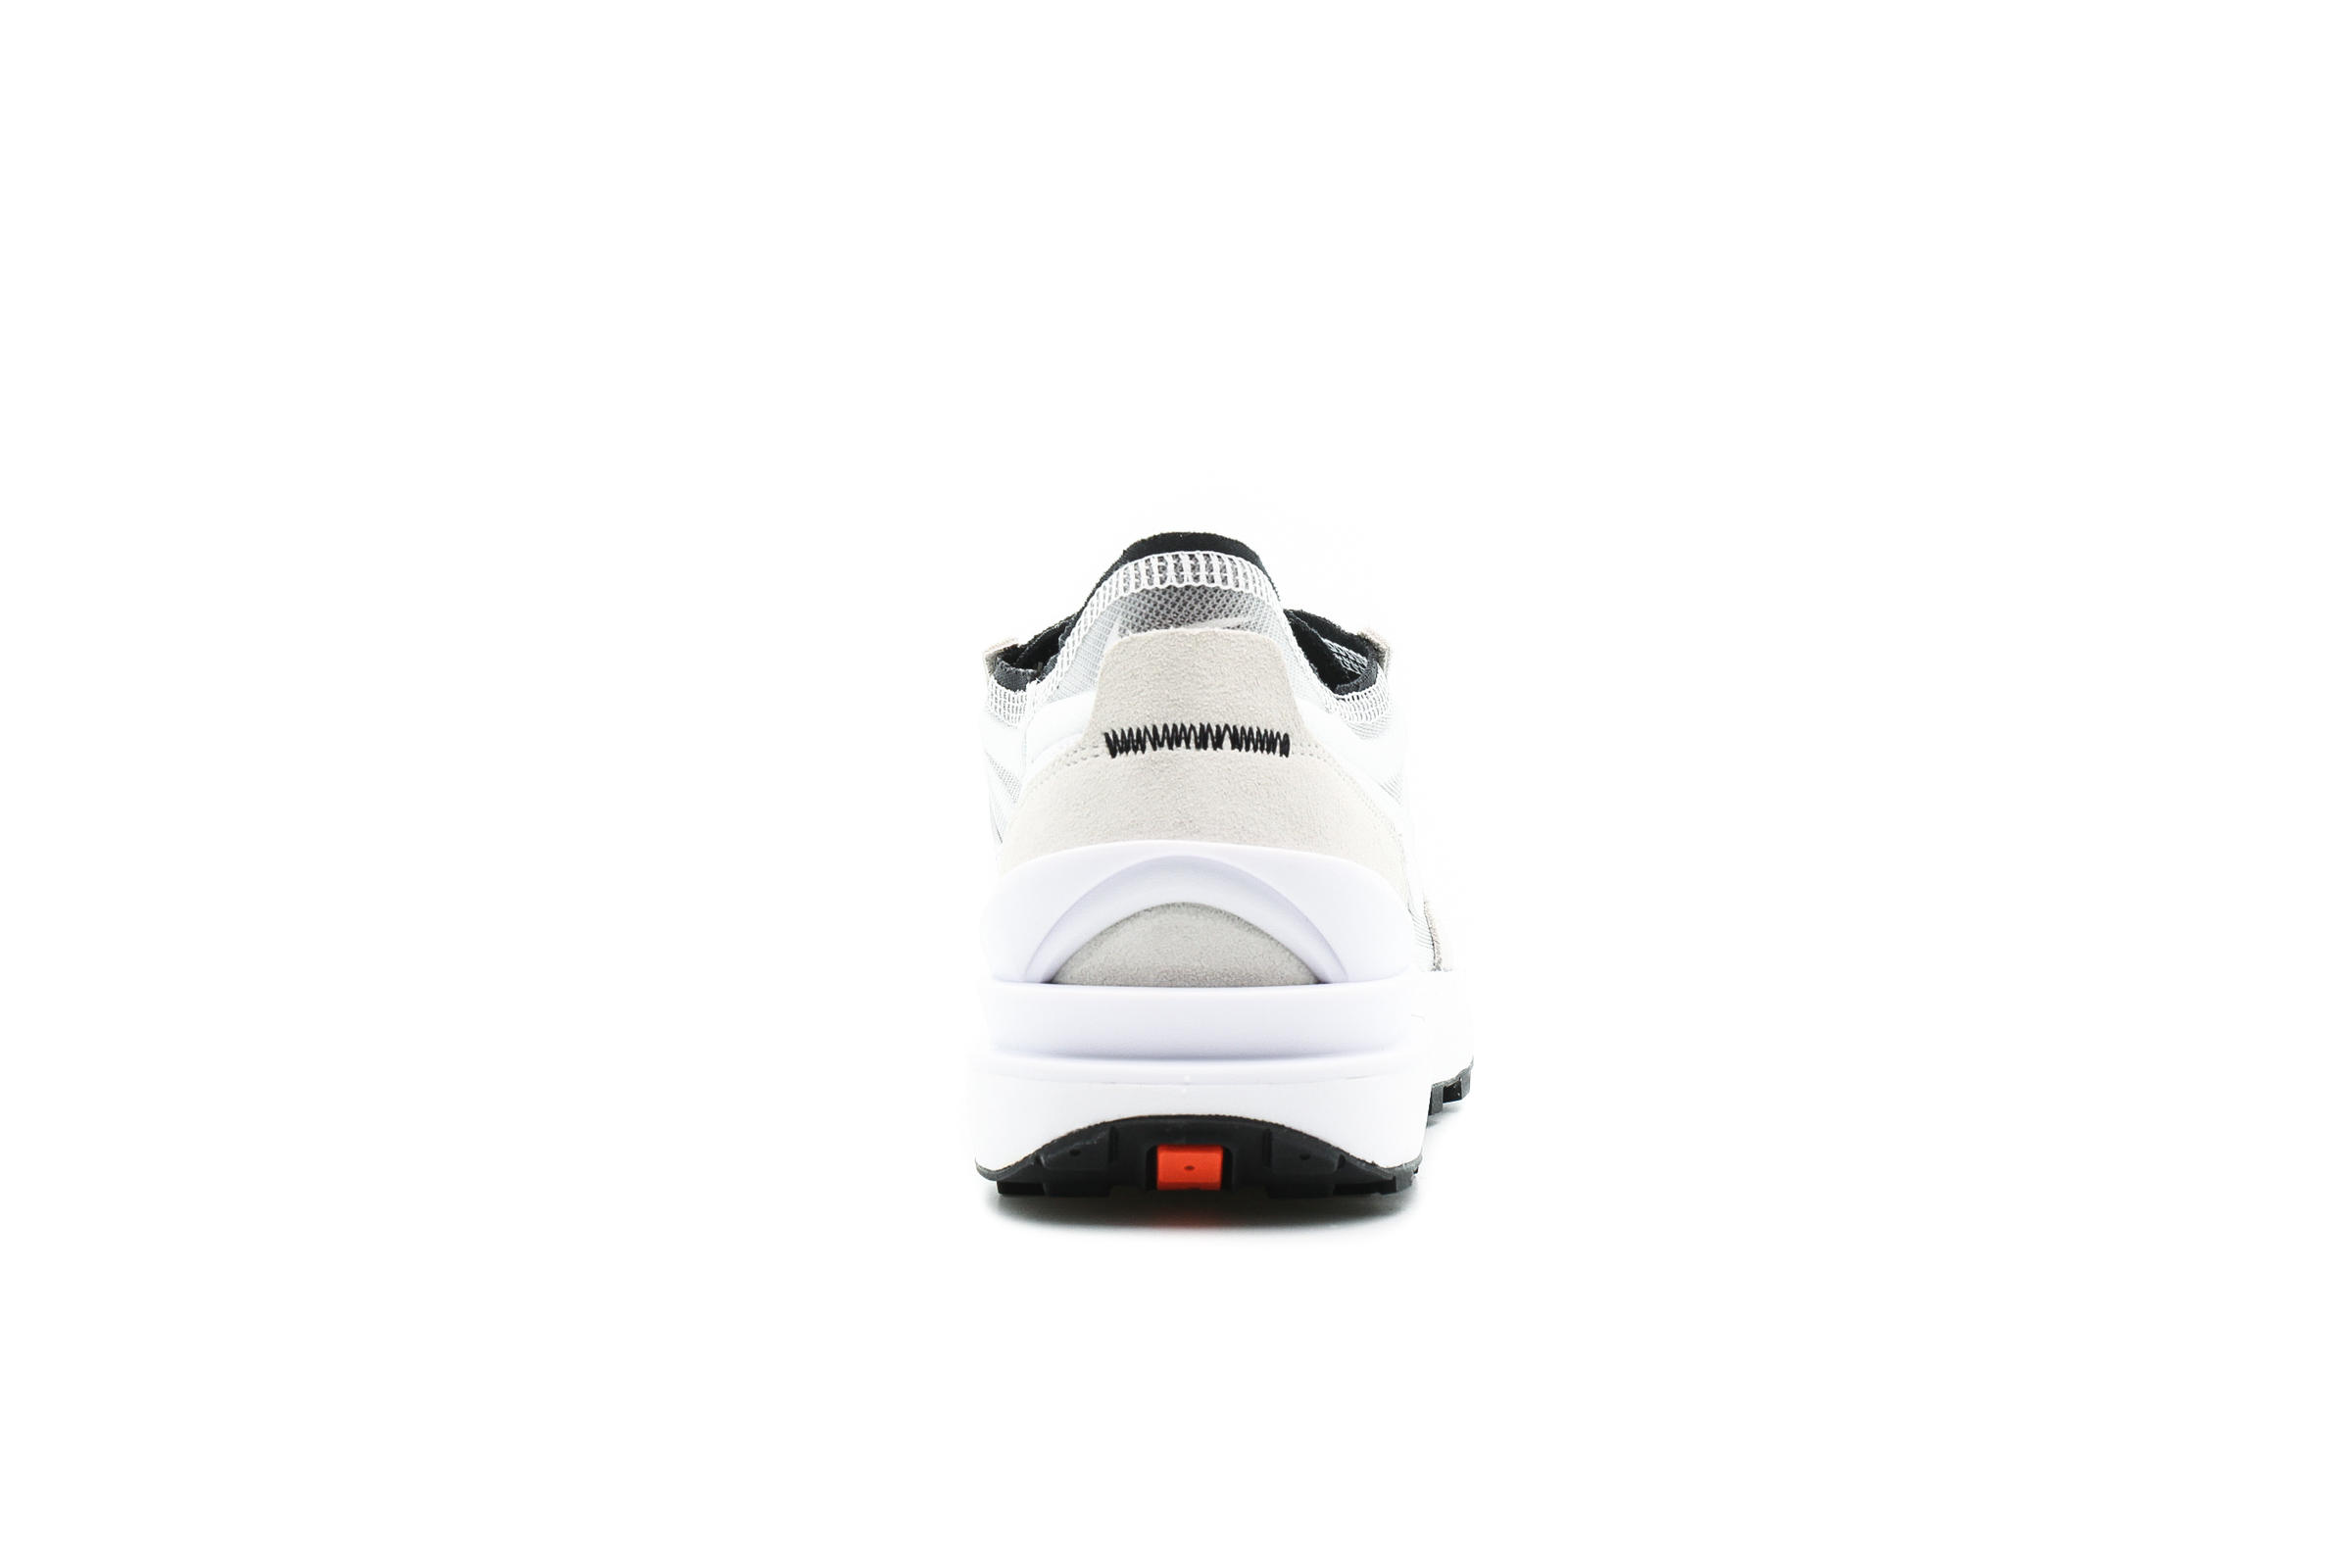 Nike WAFFLE ONE "SUMMIT WHITE"